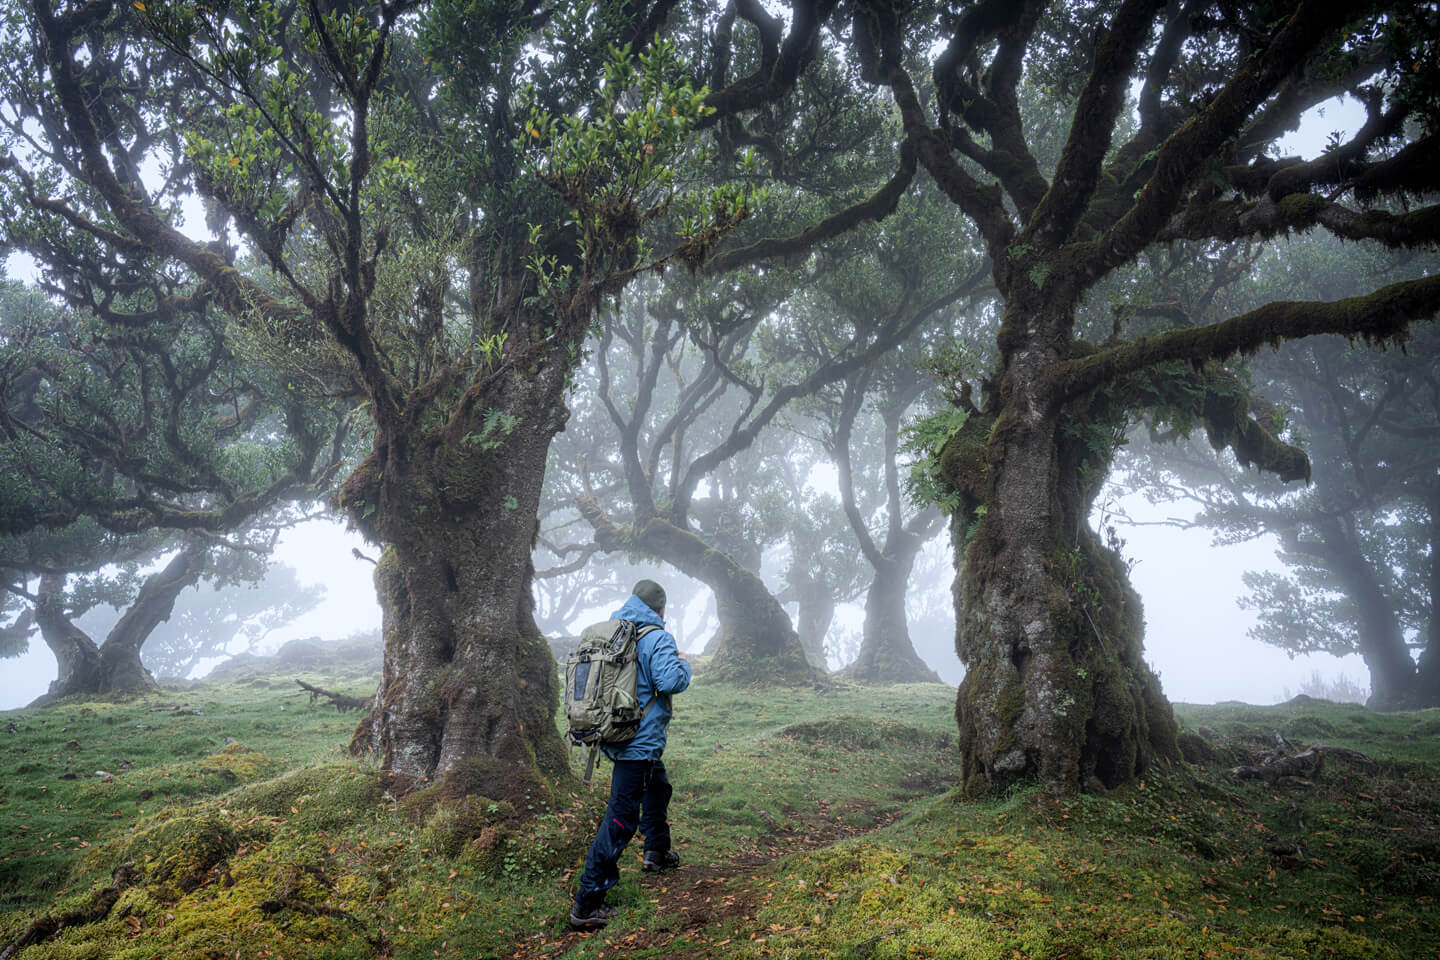 Fotograf Florian Läufer auf dem Weg in den Lorbeerwald in Fanal auf Madeira.